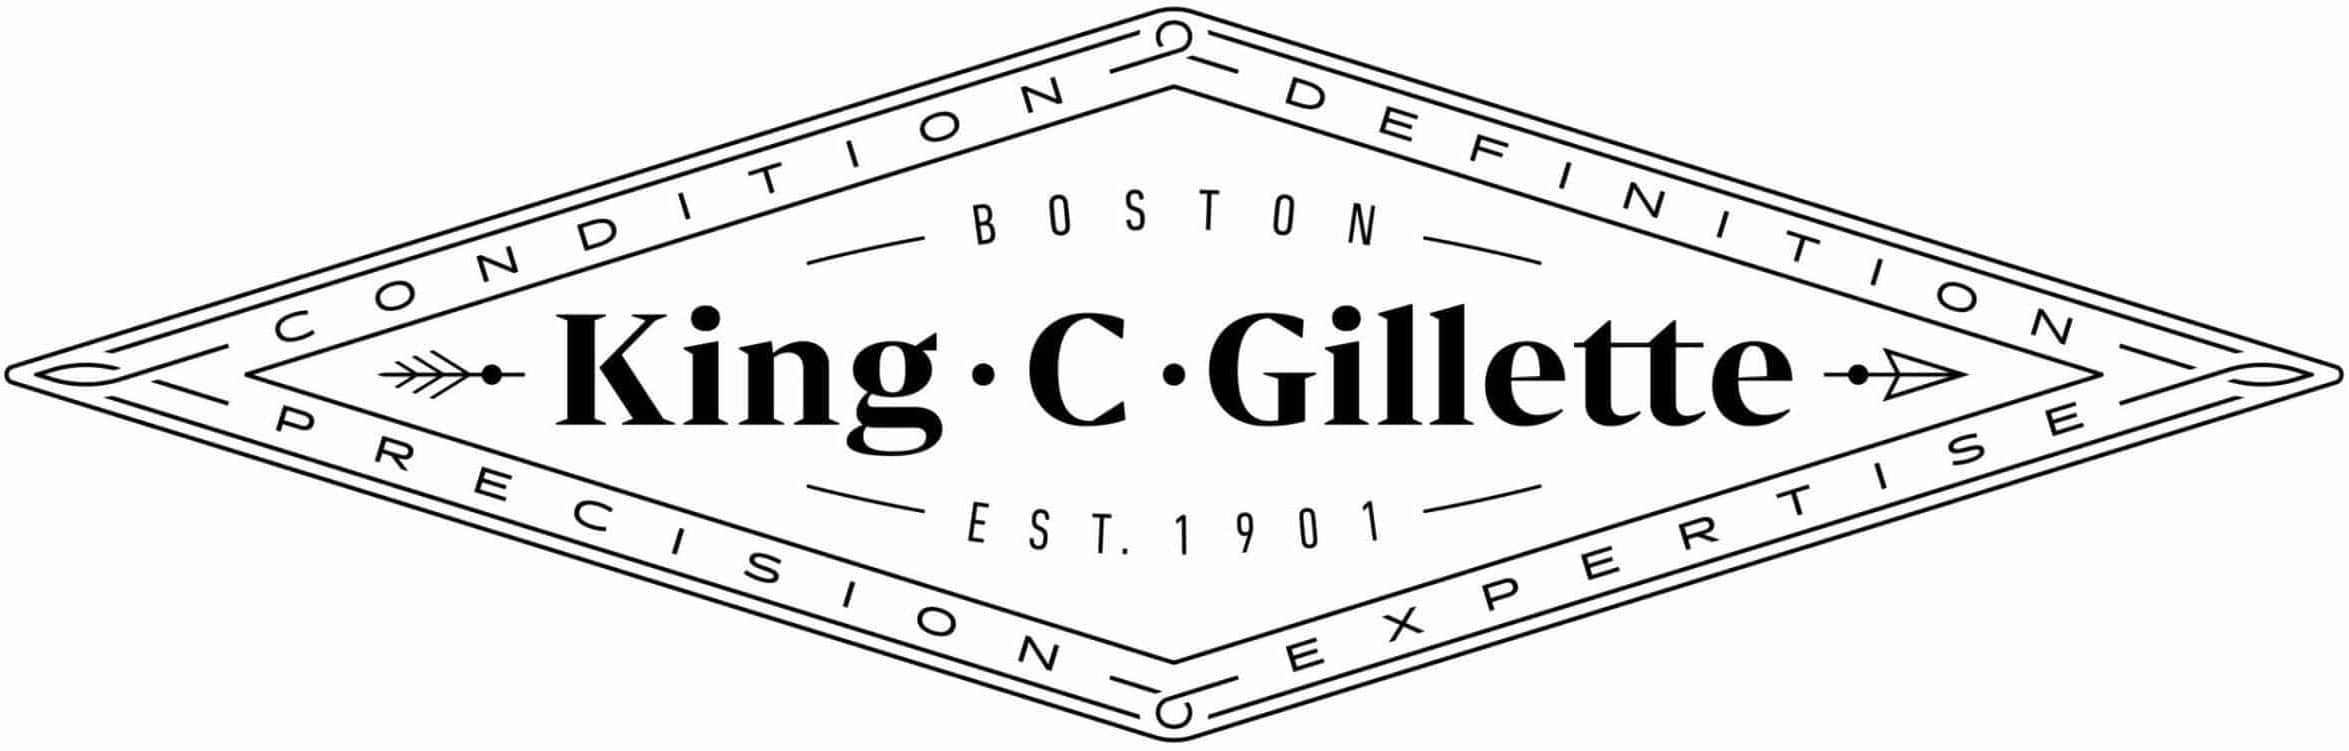 king c gillette logo